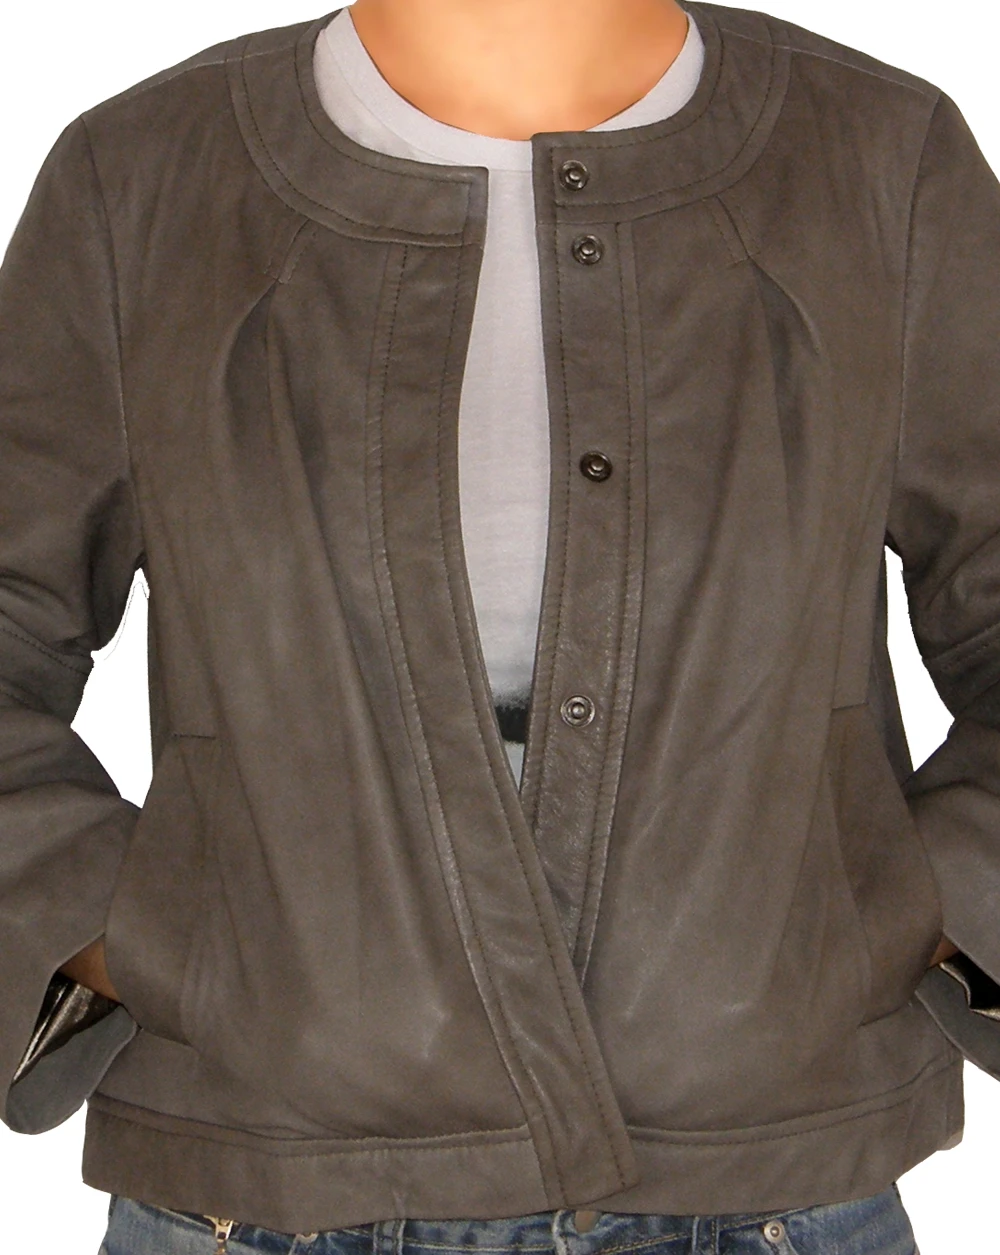 Merriam round neck leather jacket